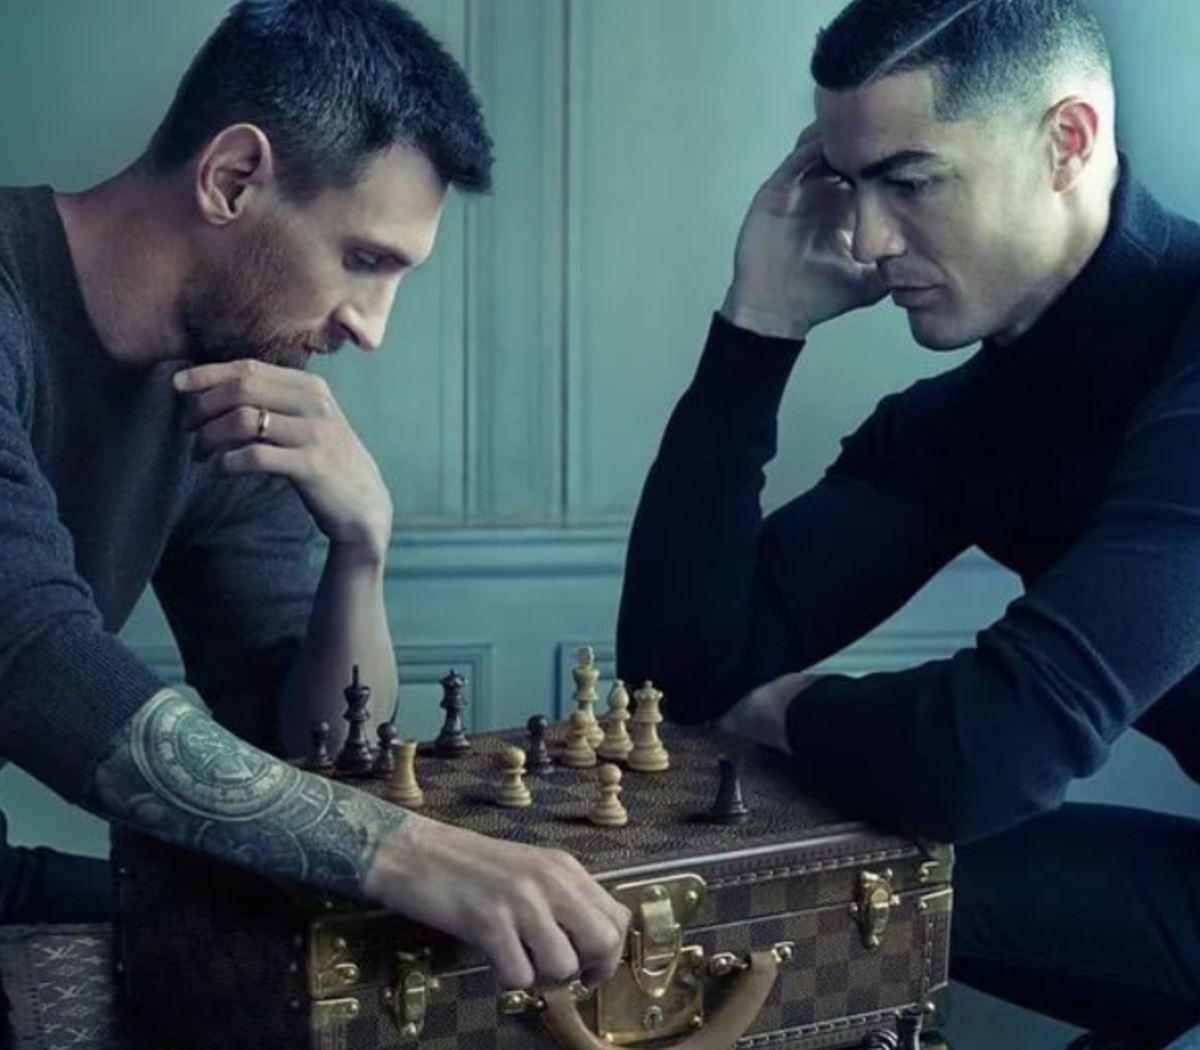 La foto viral de Lionel Messi y Cristiano Ronaldo en un duelo de ajedrez -  LA NACION